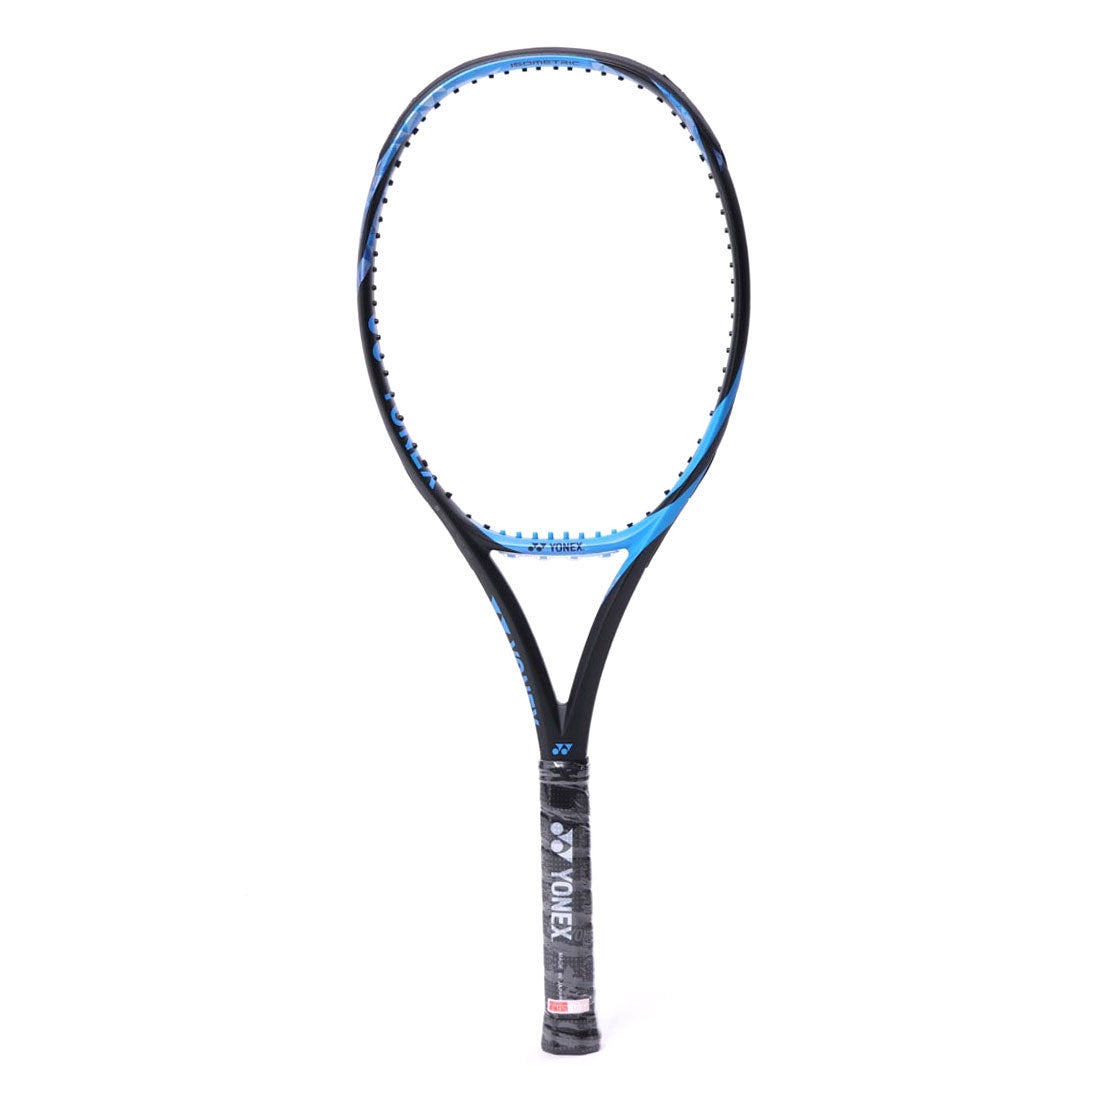 16489円 リアル ヨネックス YONEX 硬式テニス 未張りラケット Eゾーン98 17EZ98